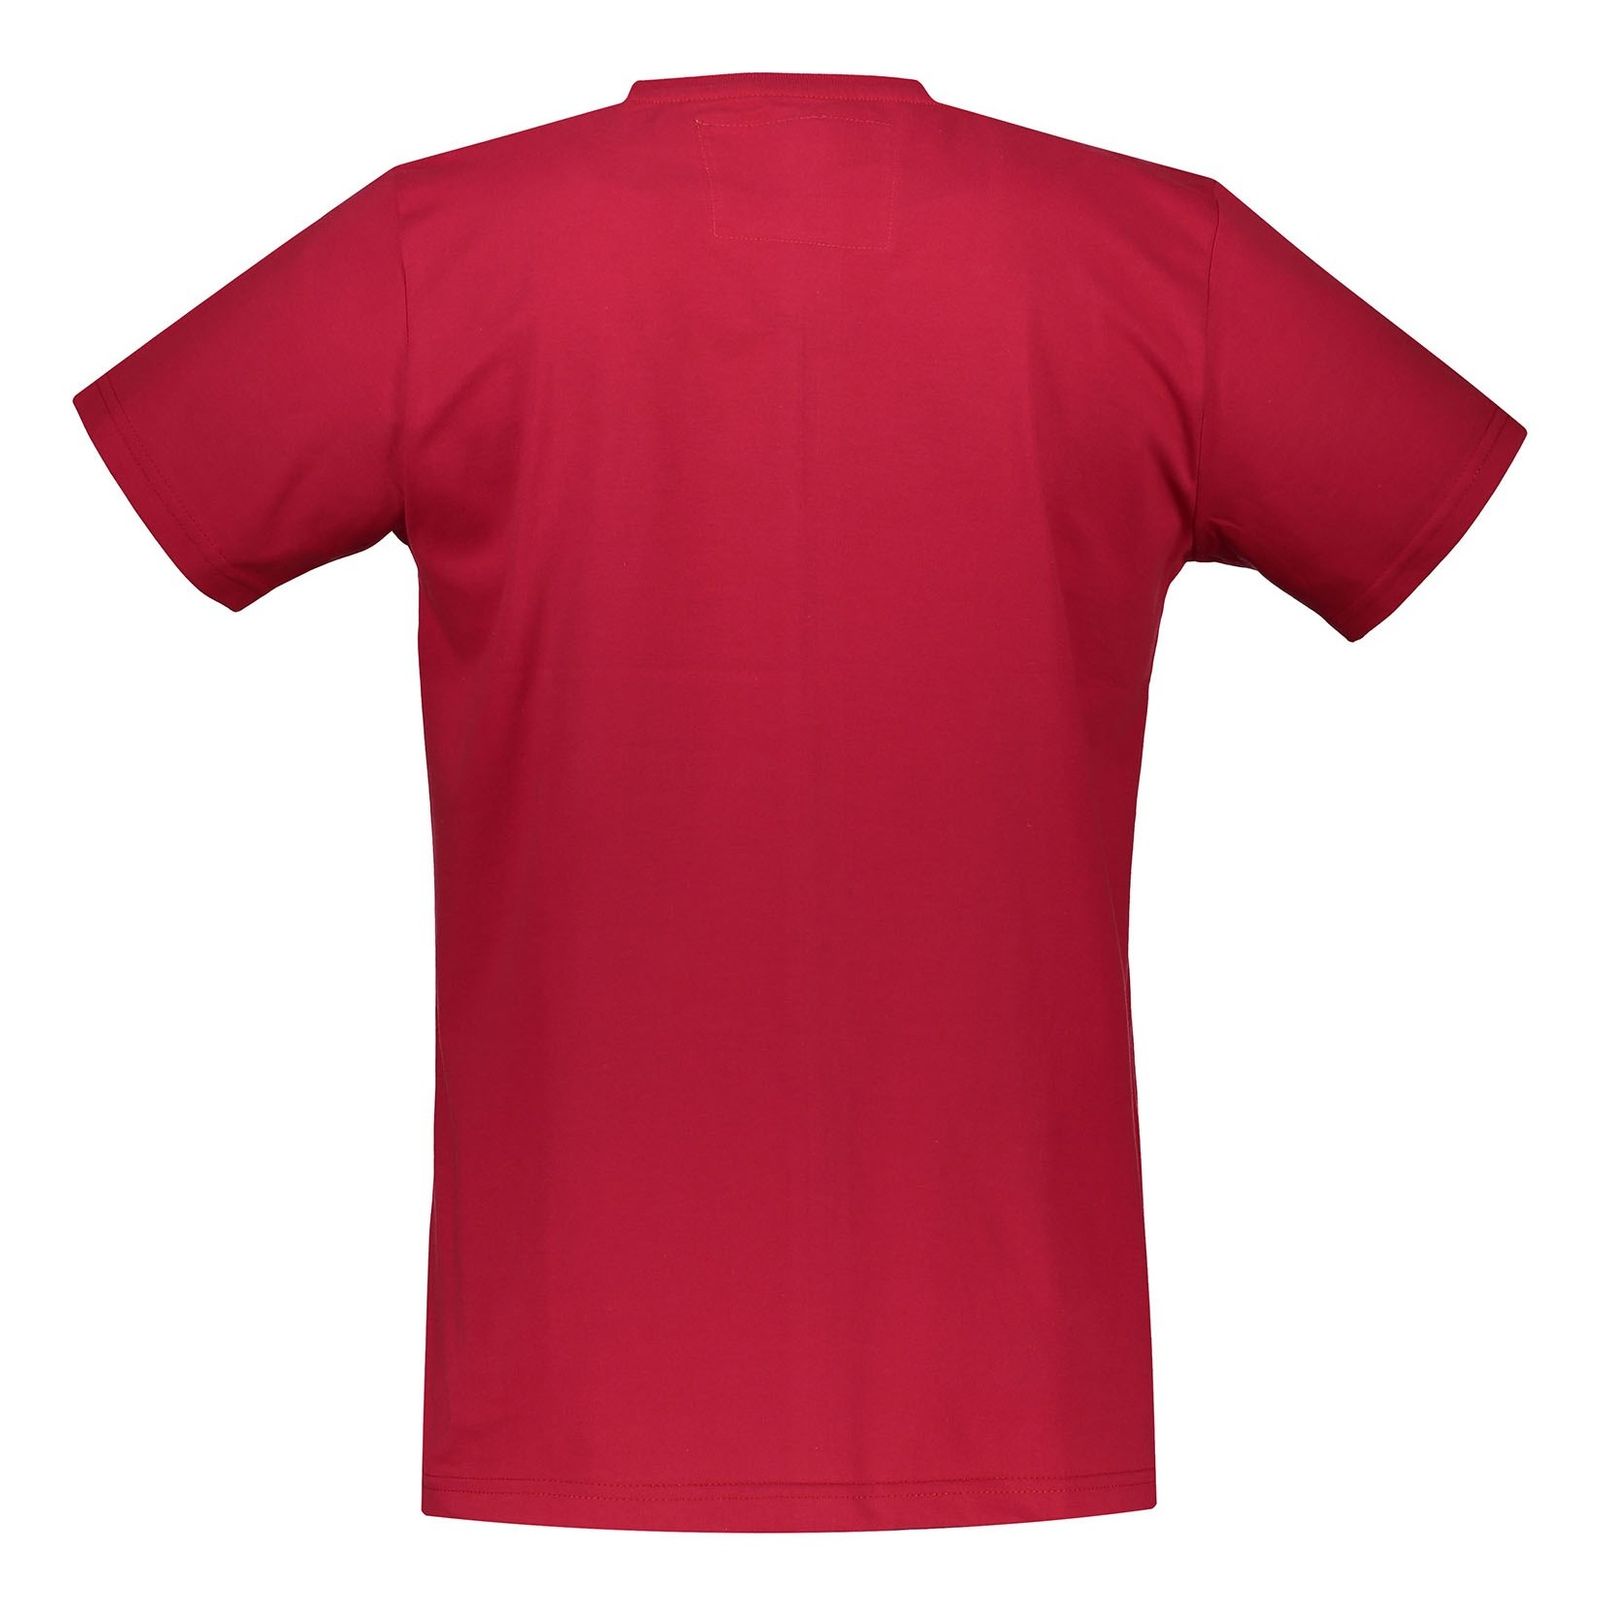 تی شرت نخی یقه گرد مردانه - تچر - قرمز   - 3